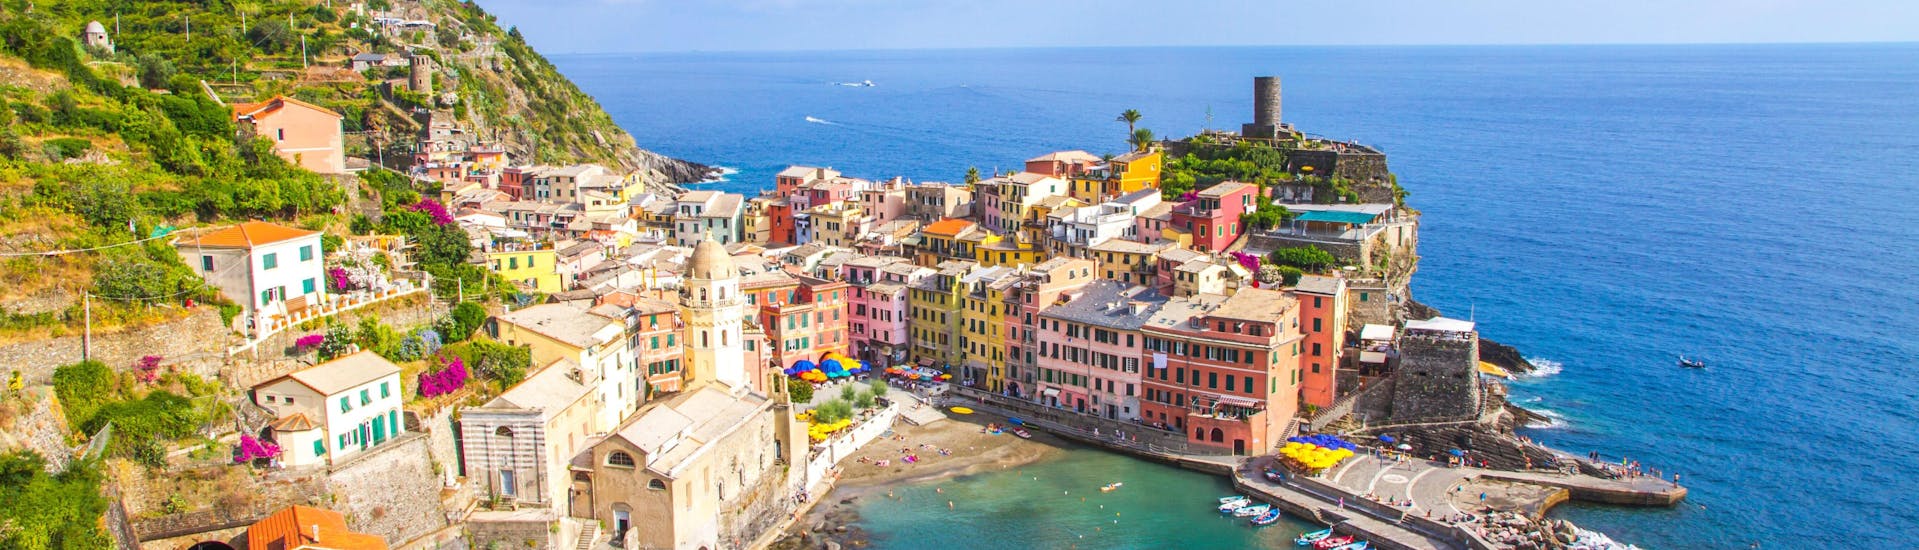 Vue sur Vernazza, une destination populaire pour les balades en bateau dans les Cinque Terre.